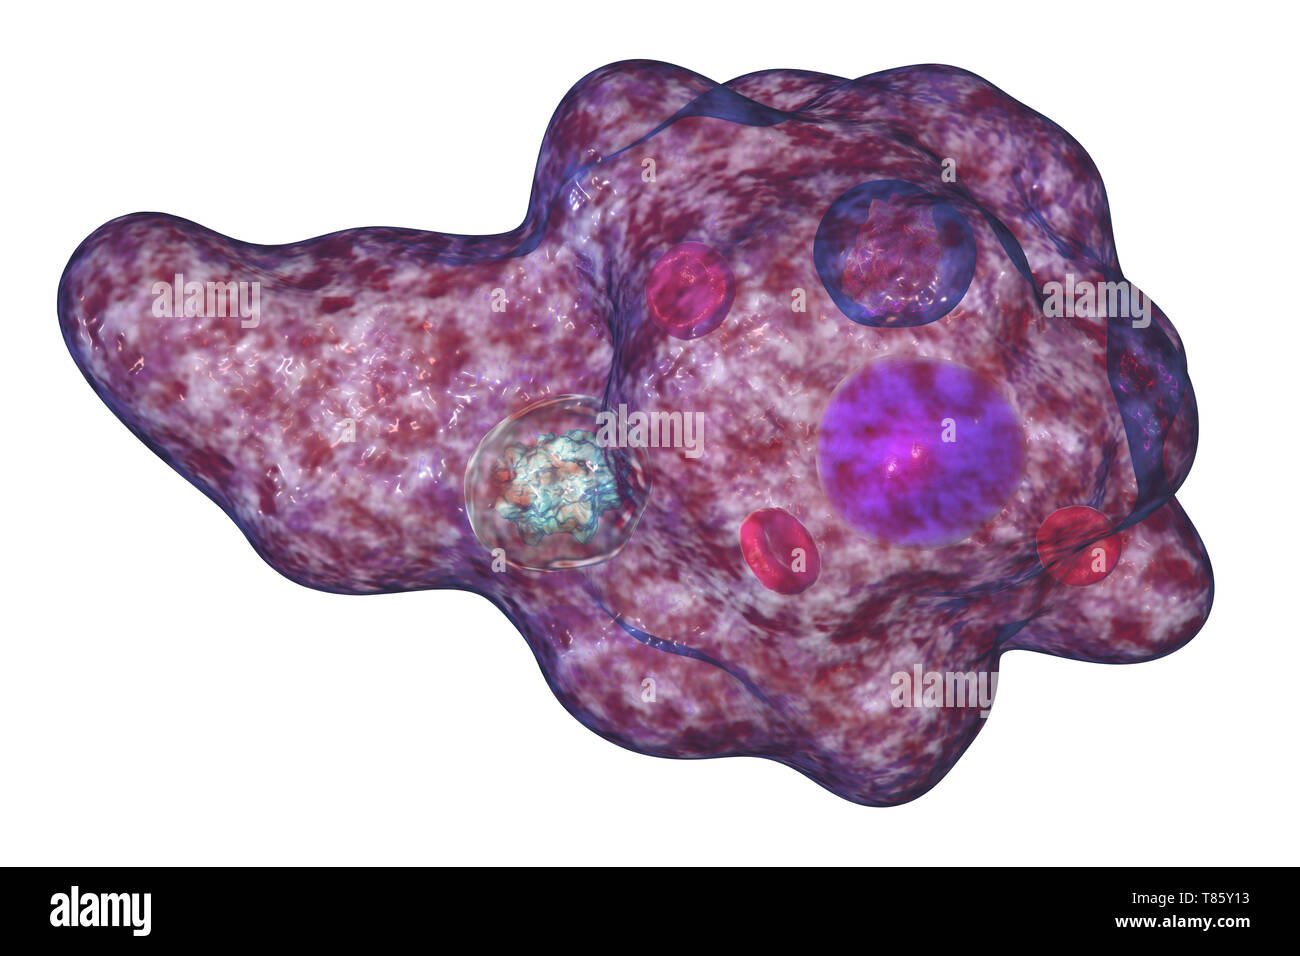 Parasitic amoeba, illustration Stock Photo